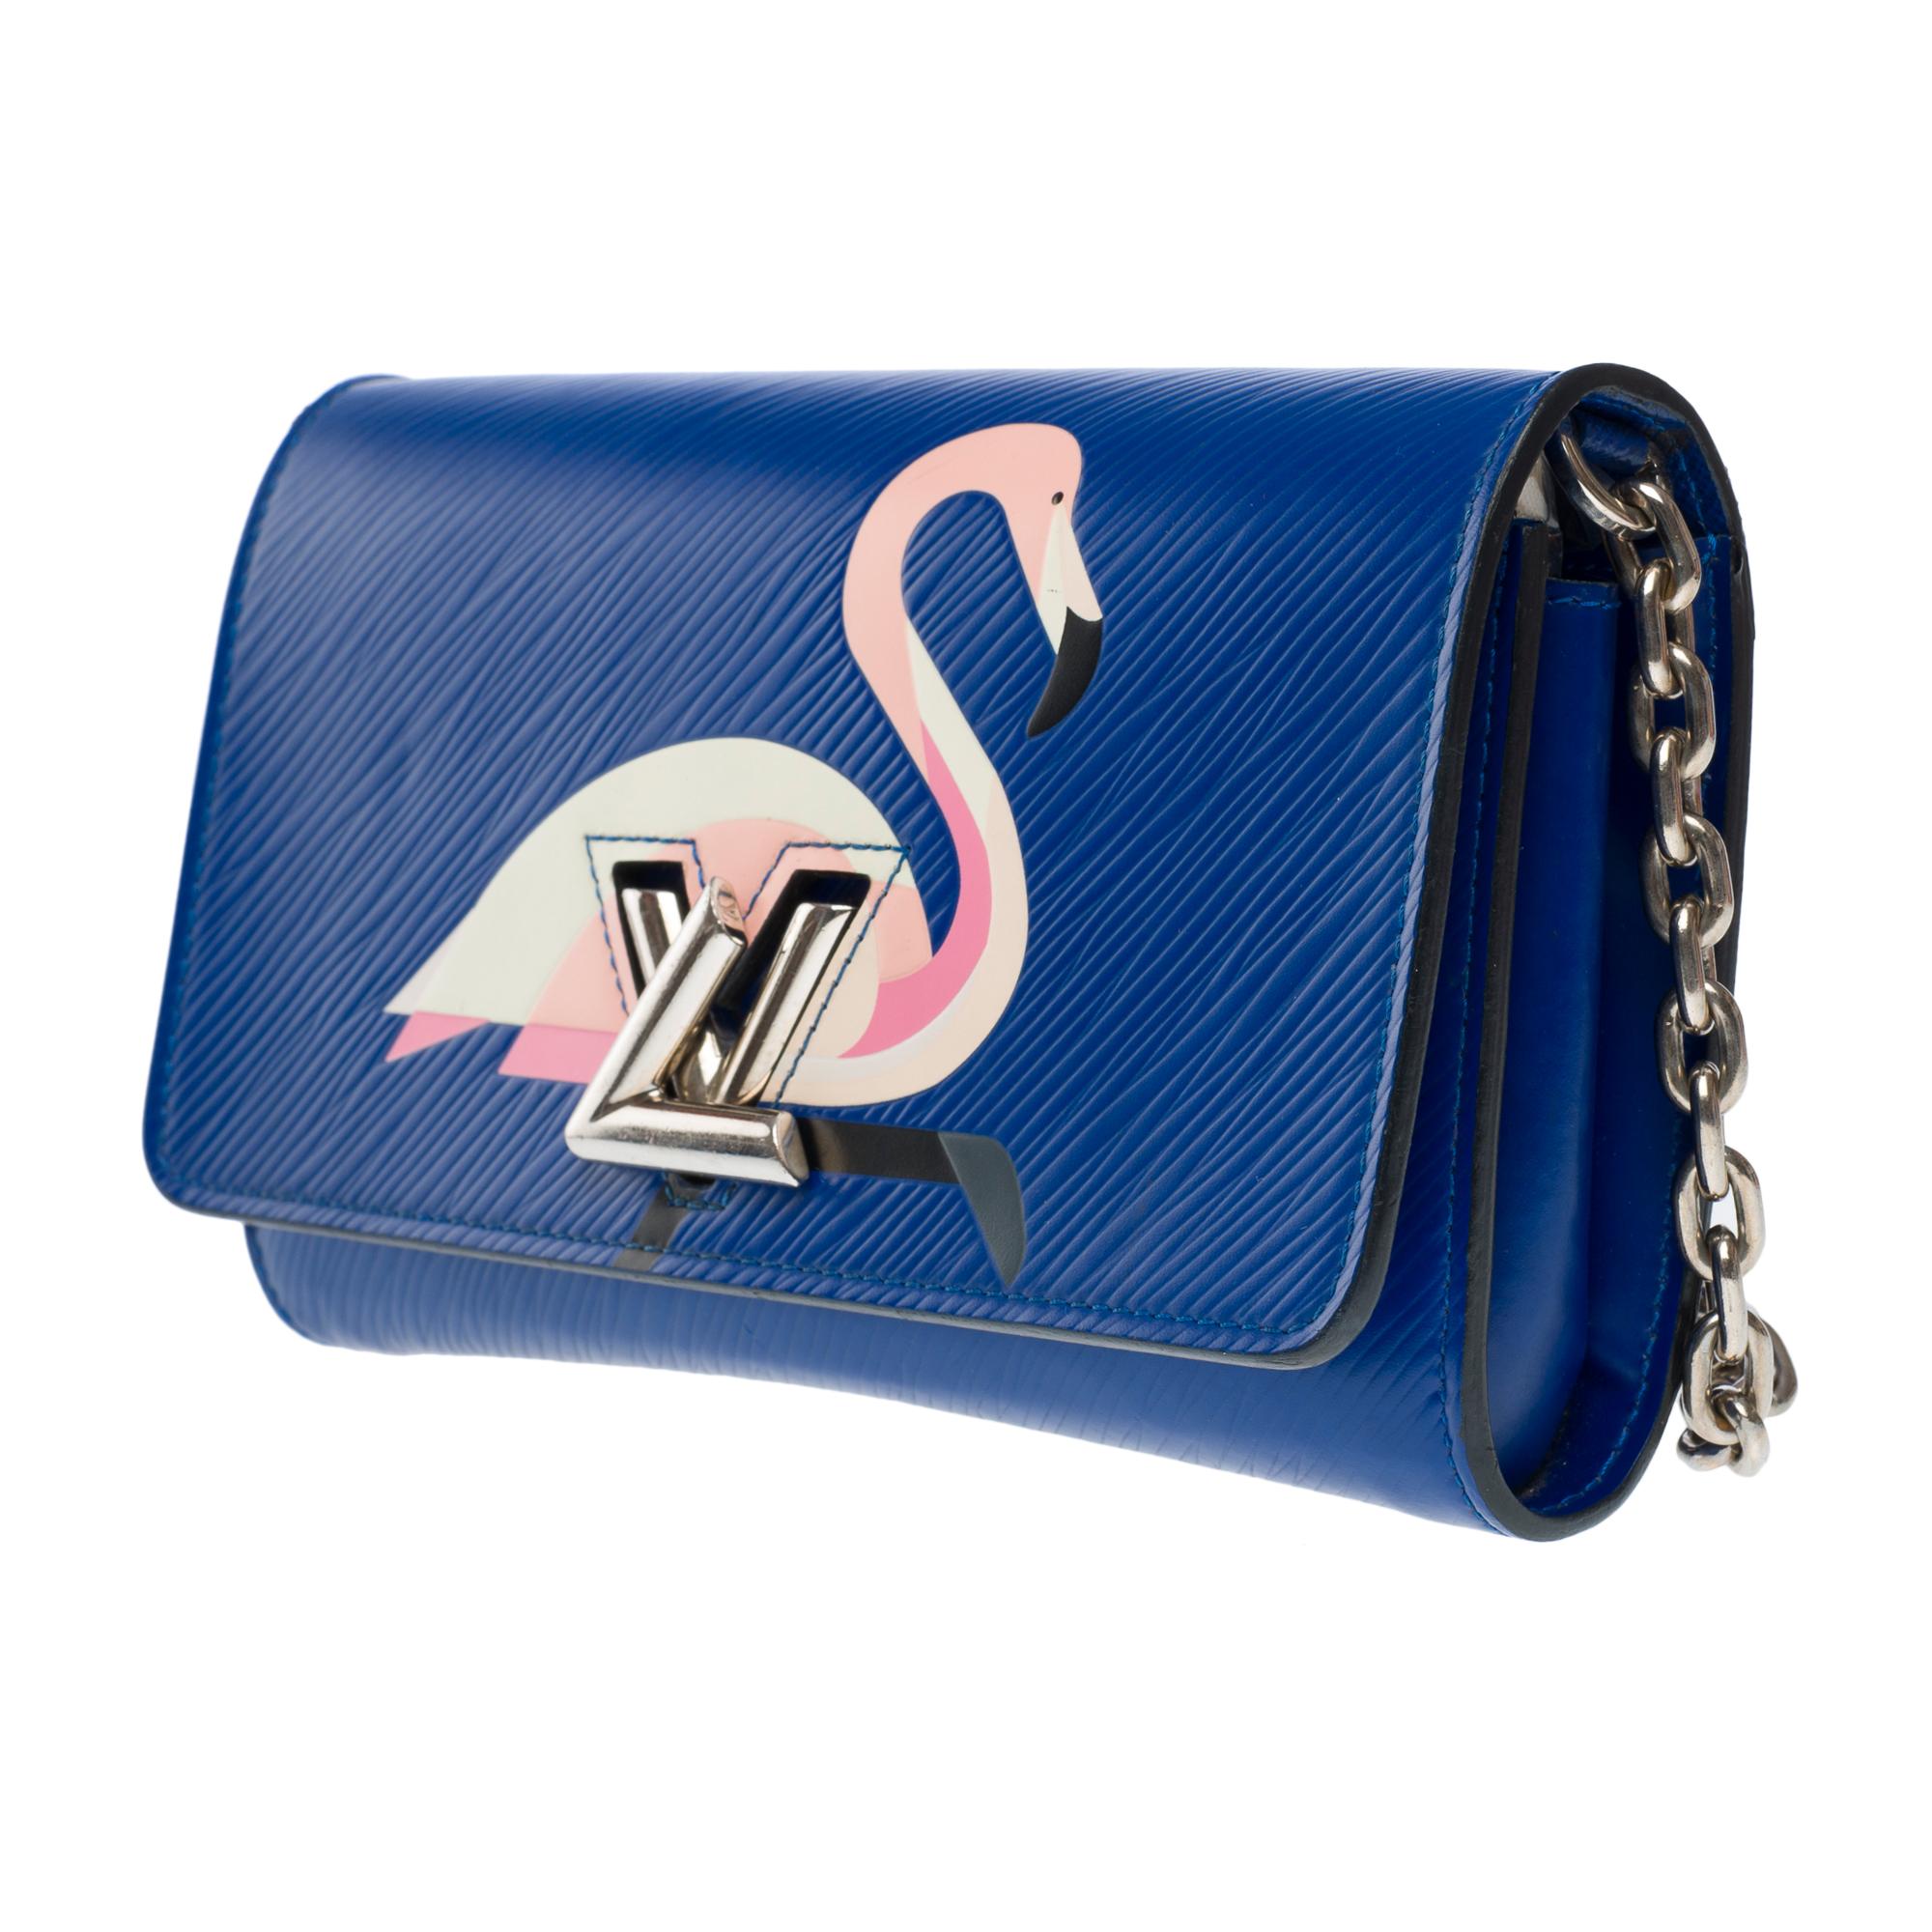 Flamingo Louis Vuitton Twist shoulder bag in blue epi leather, SHW 1